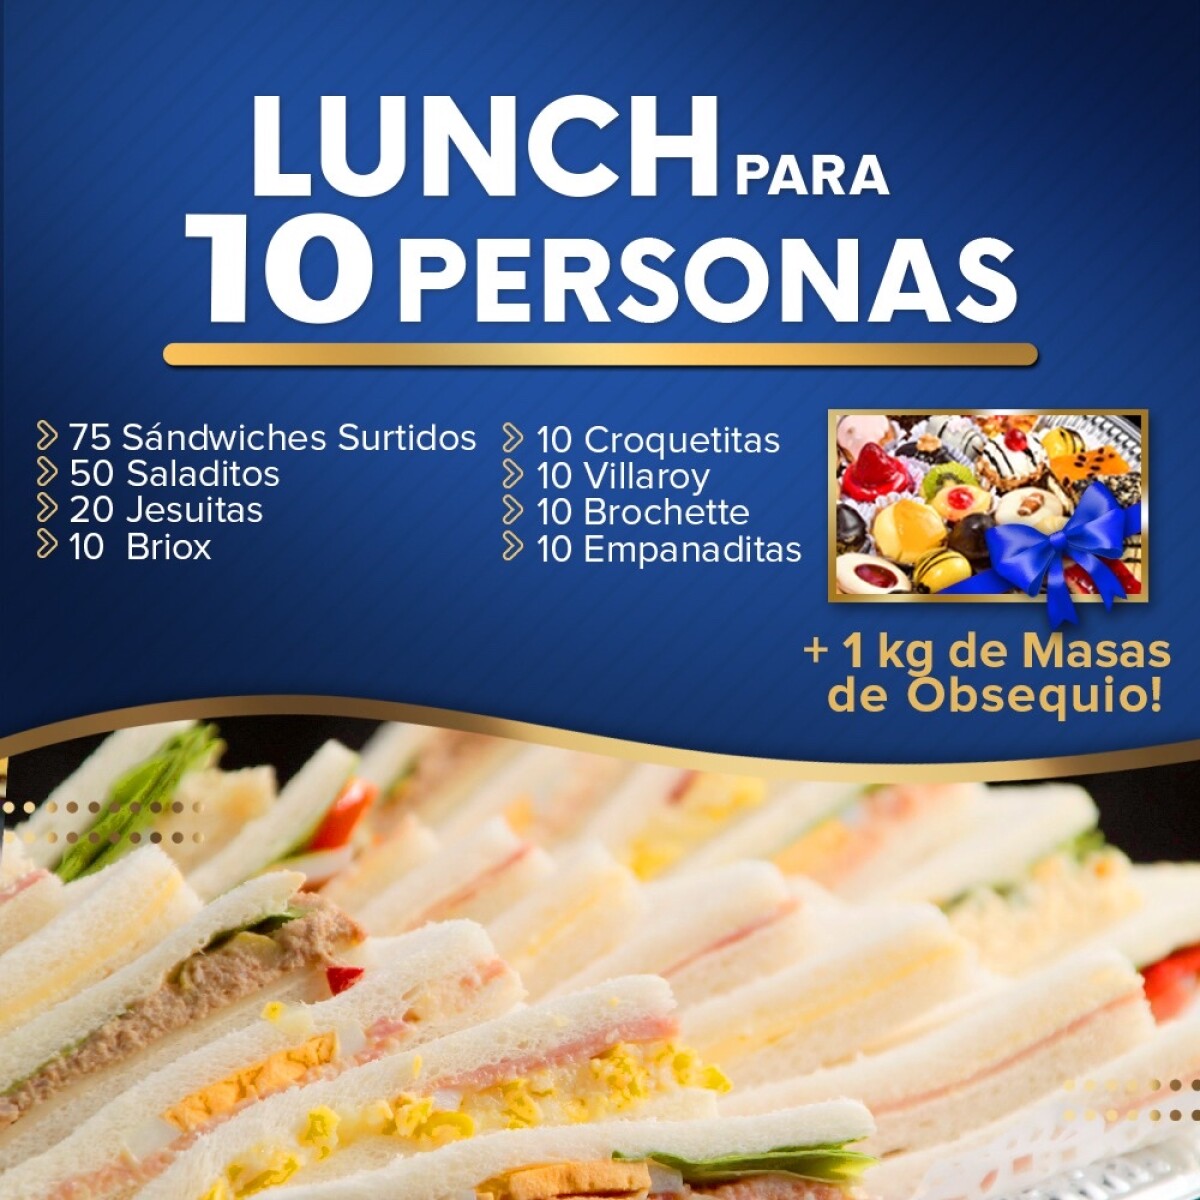 Lunch para 10 personas 